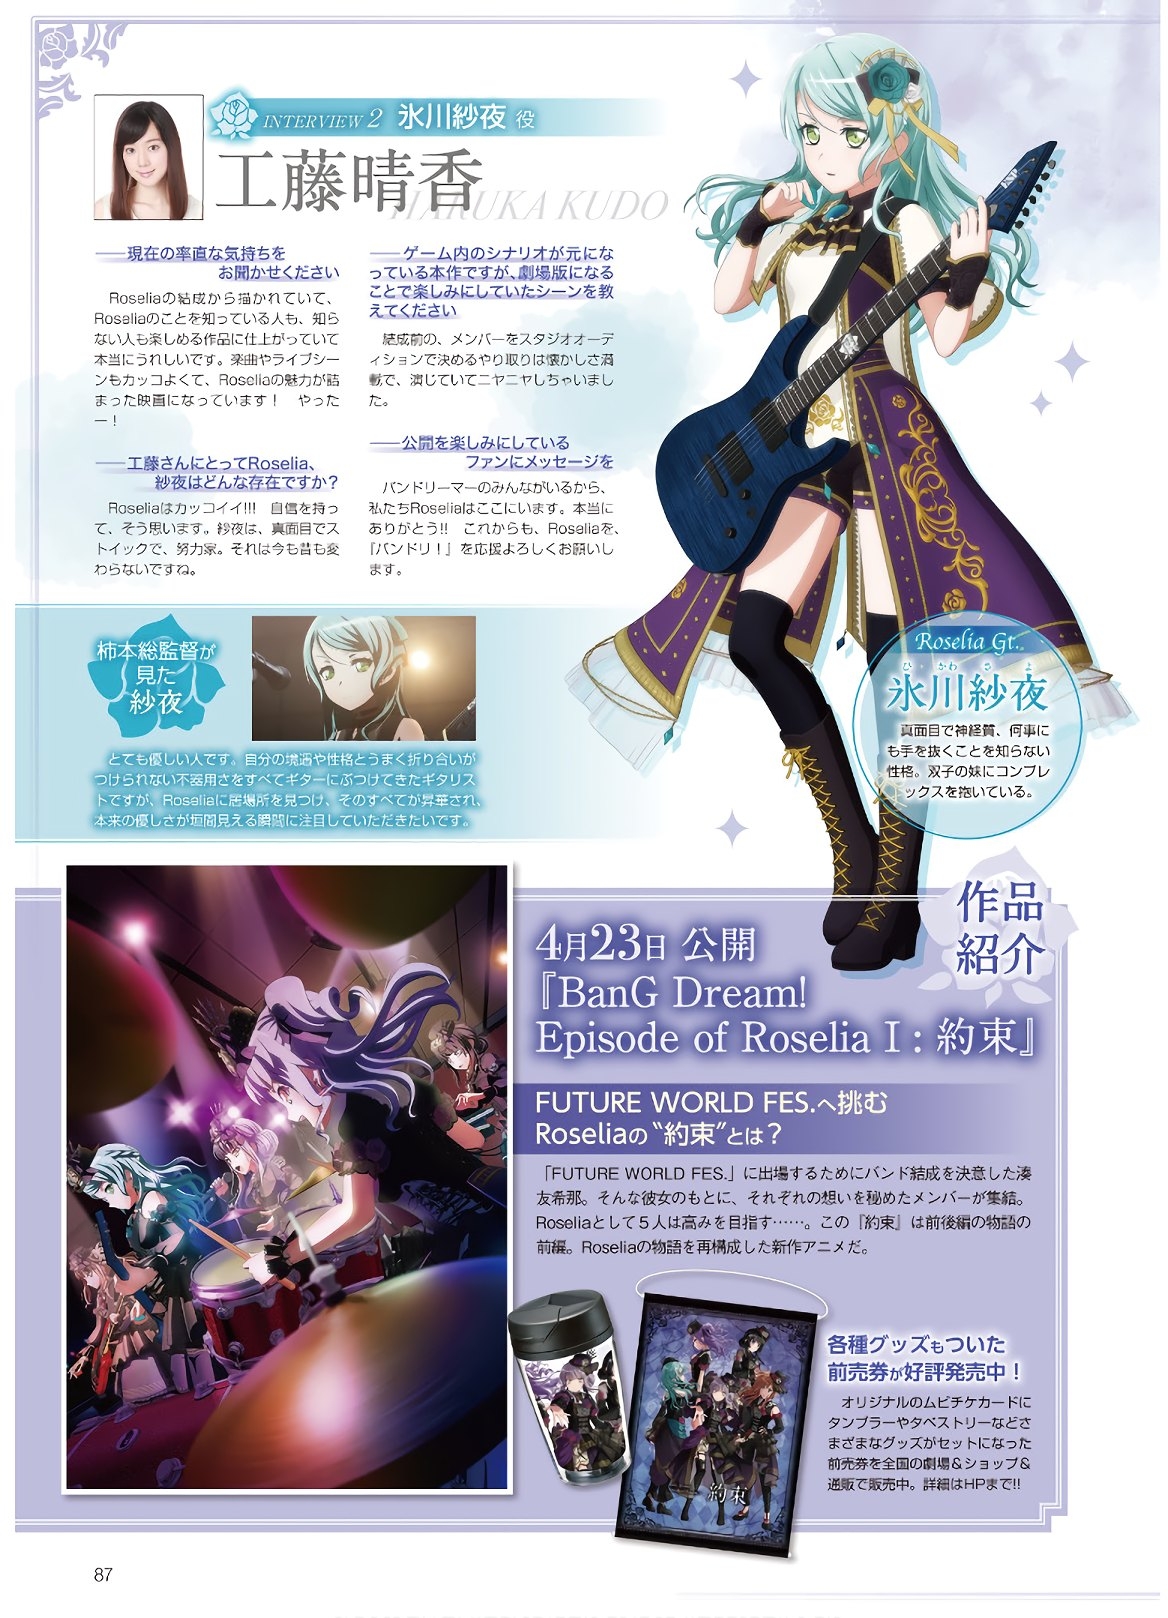 Dengeki G's Magazine #286 - May 2021 84